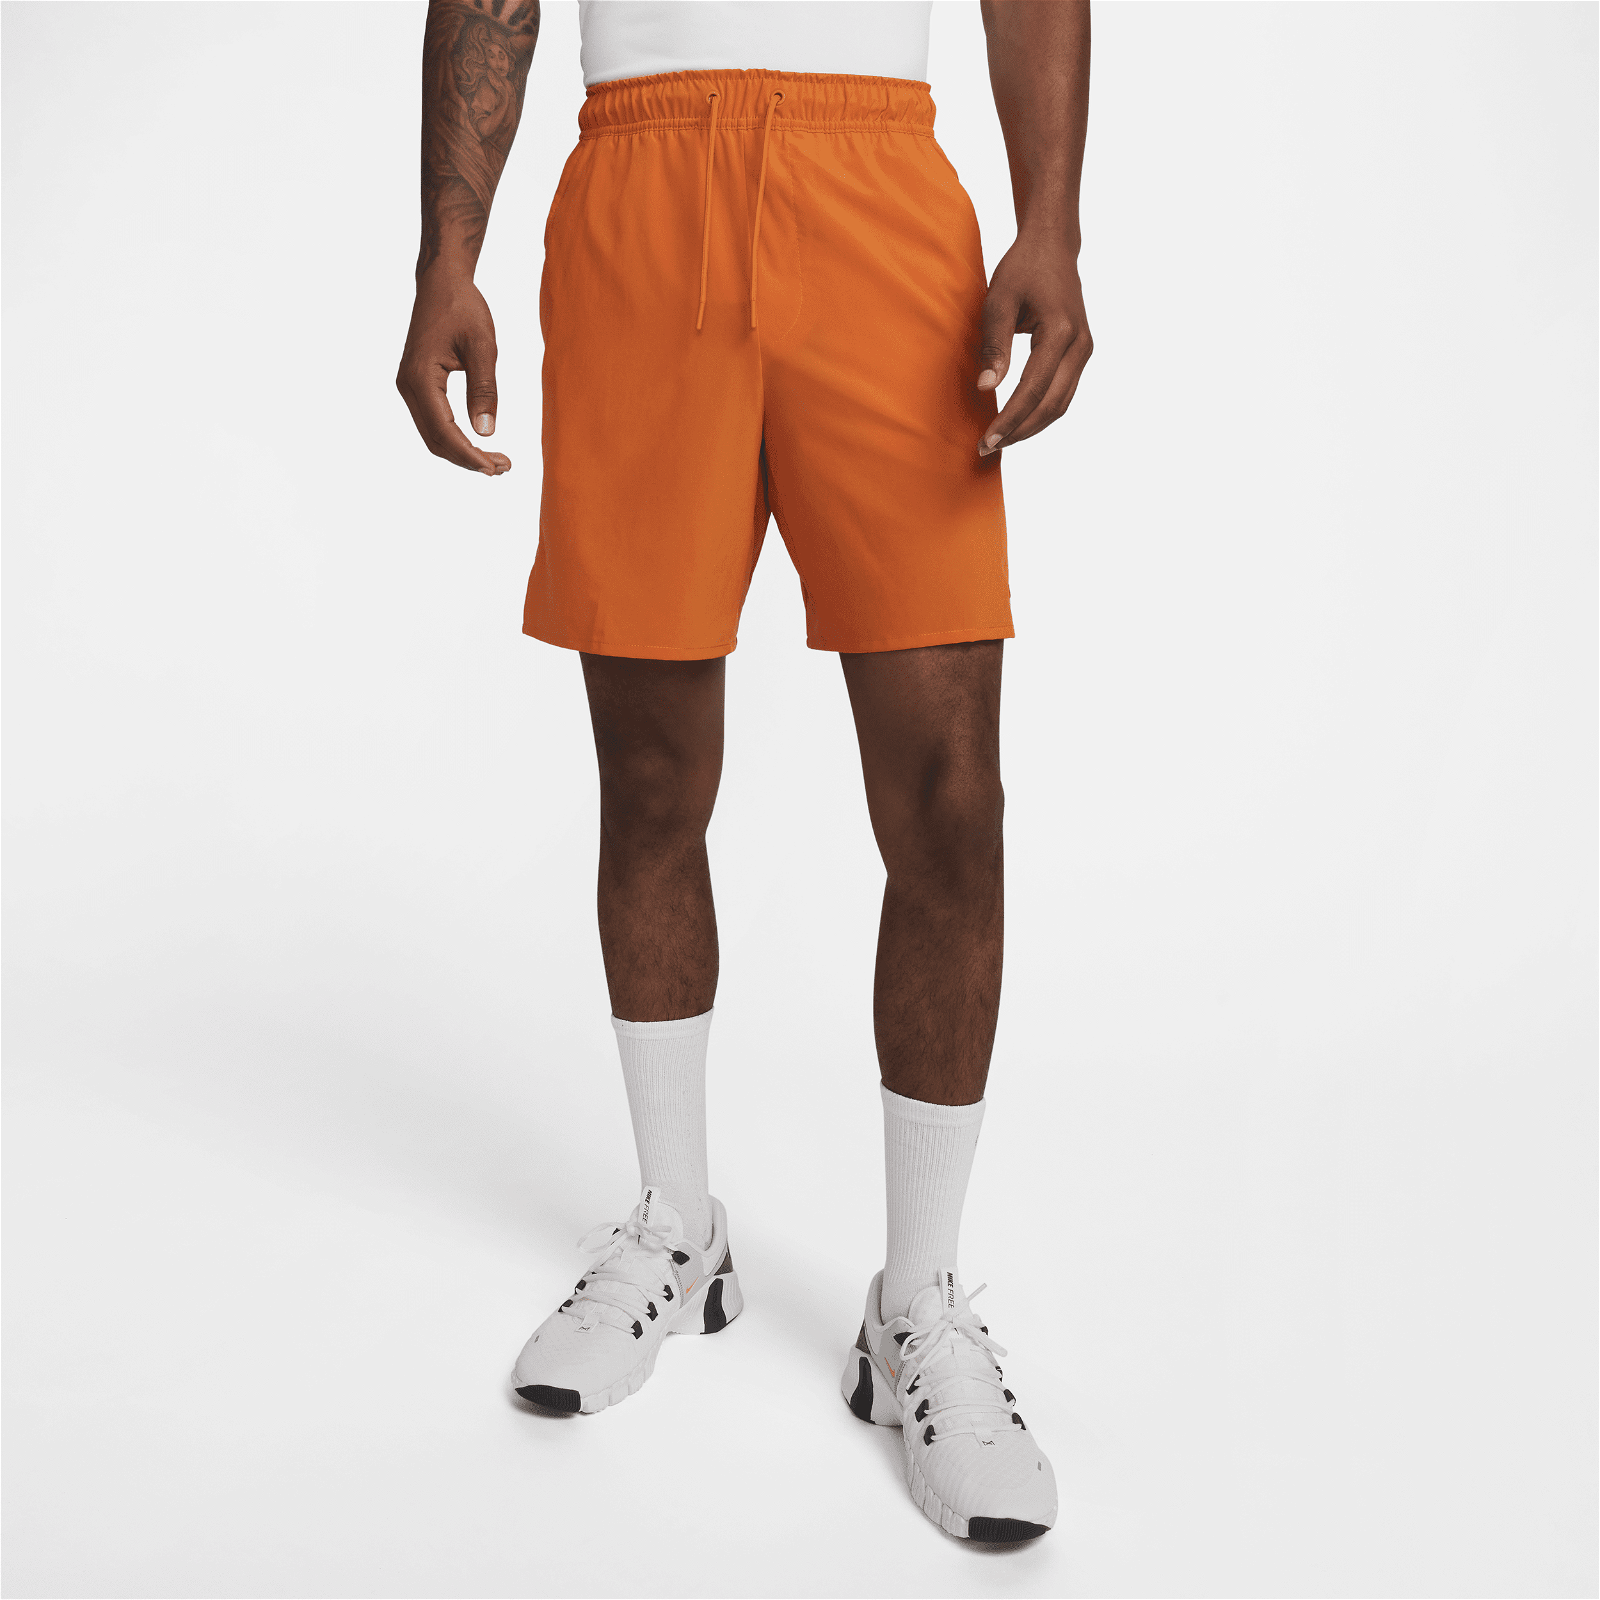 Nike Dri-FIT Men's 9 Woven Training Shorts